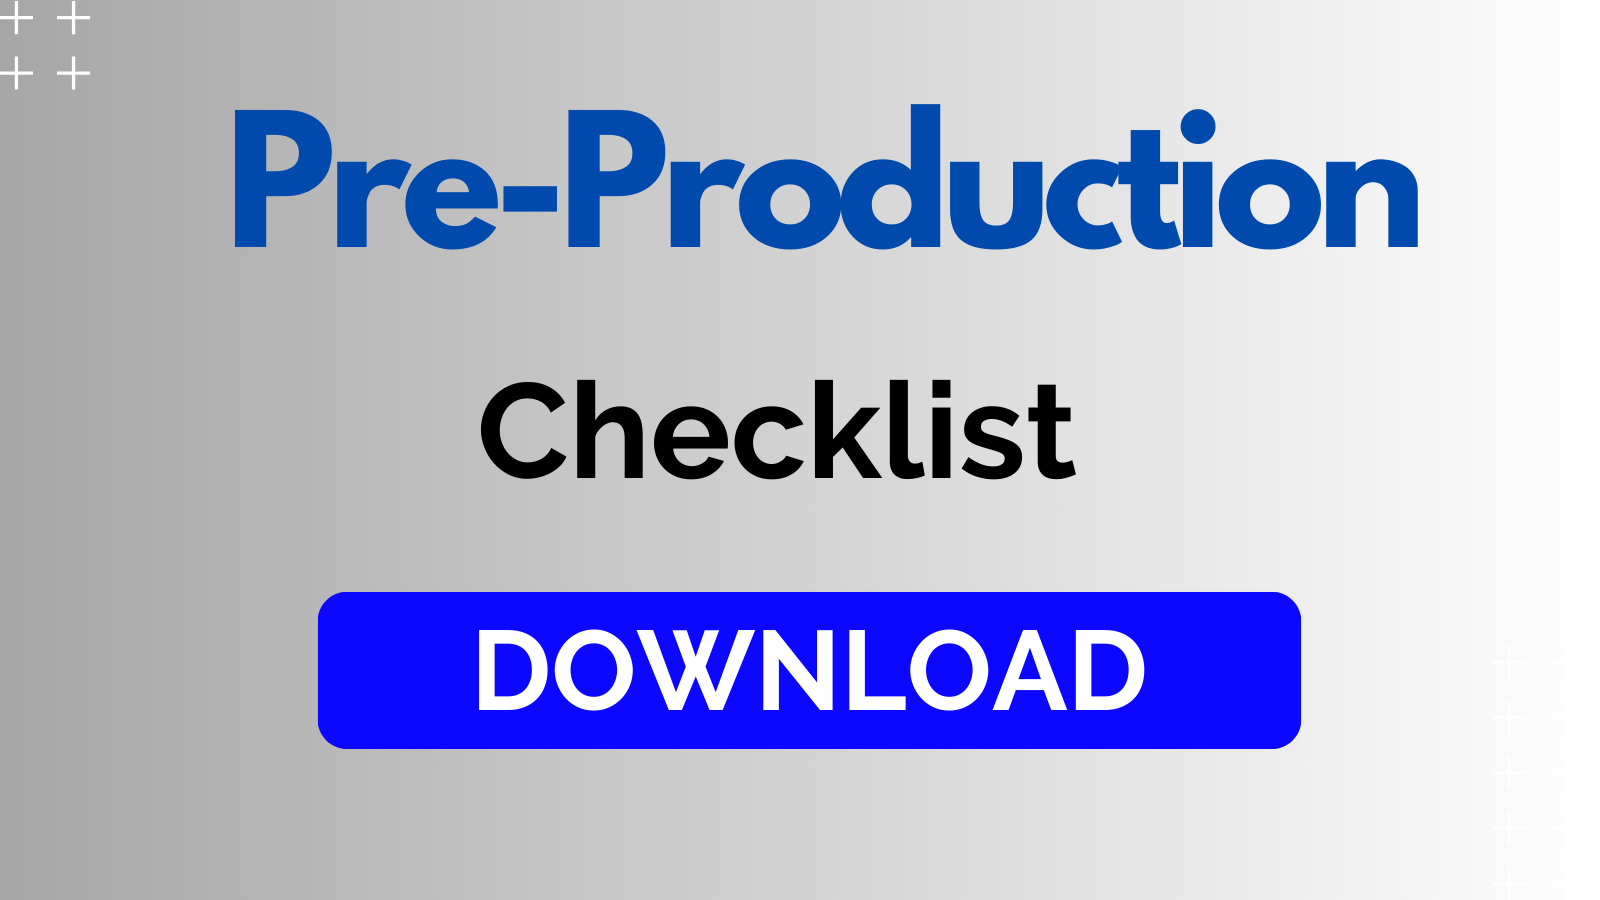 Pre-production Checklist